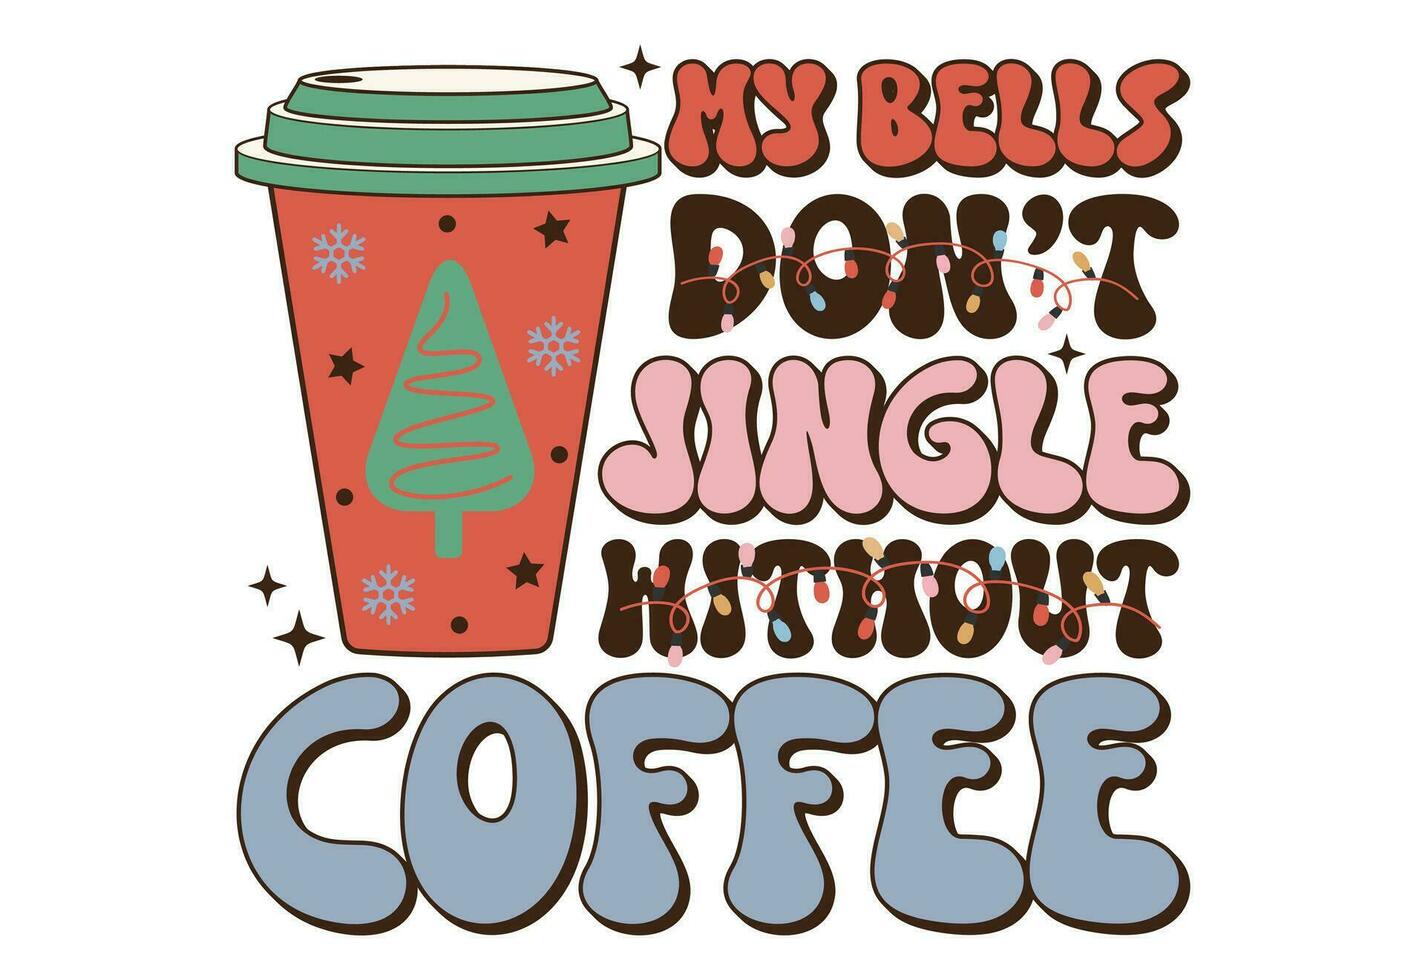 Weihnachten, retro Weihnachten zitieren, Santa Klaus, fröhlich Weihnachten, Weihnachten Kaffee vektor